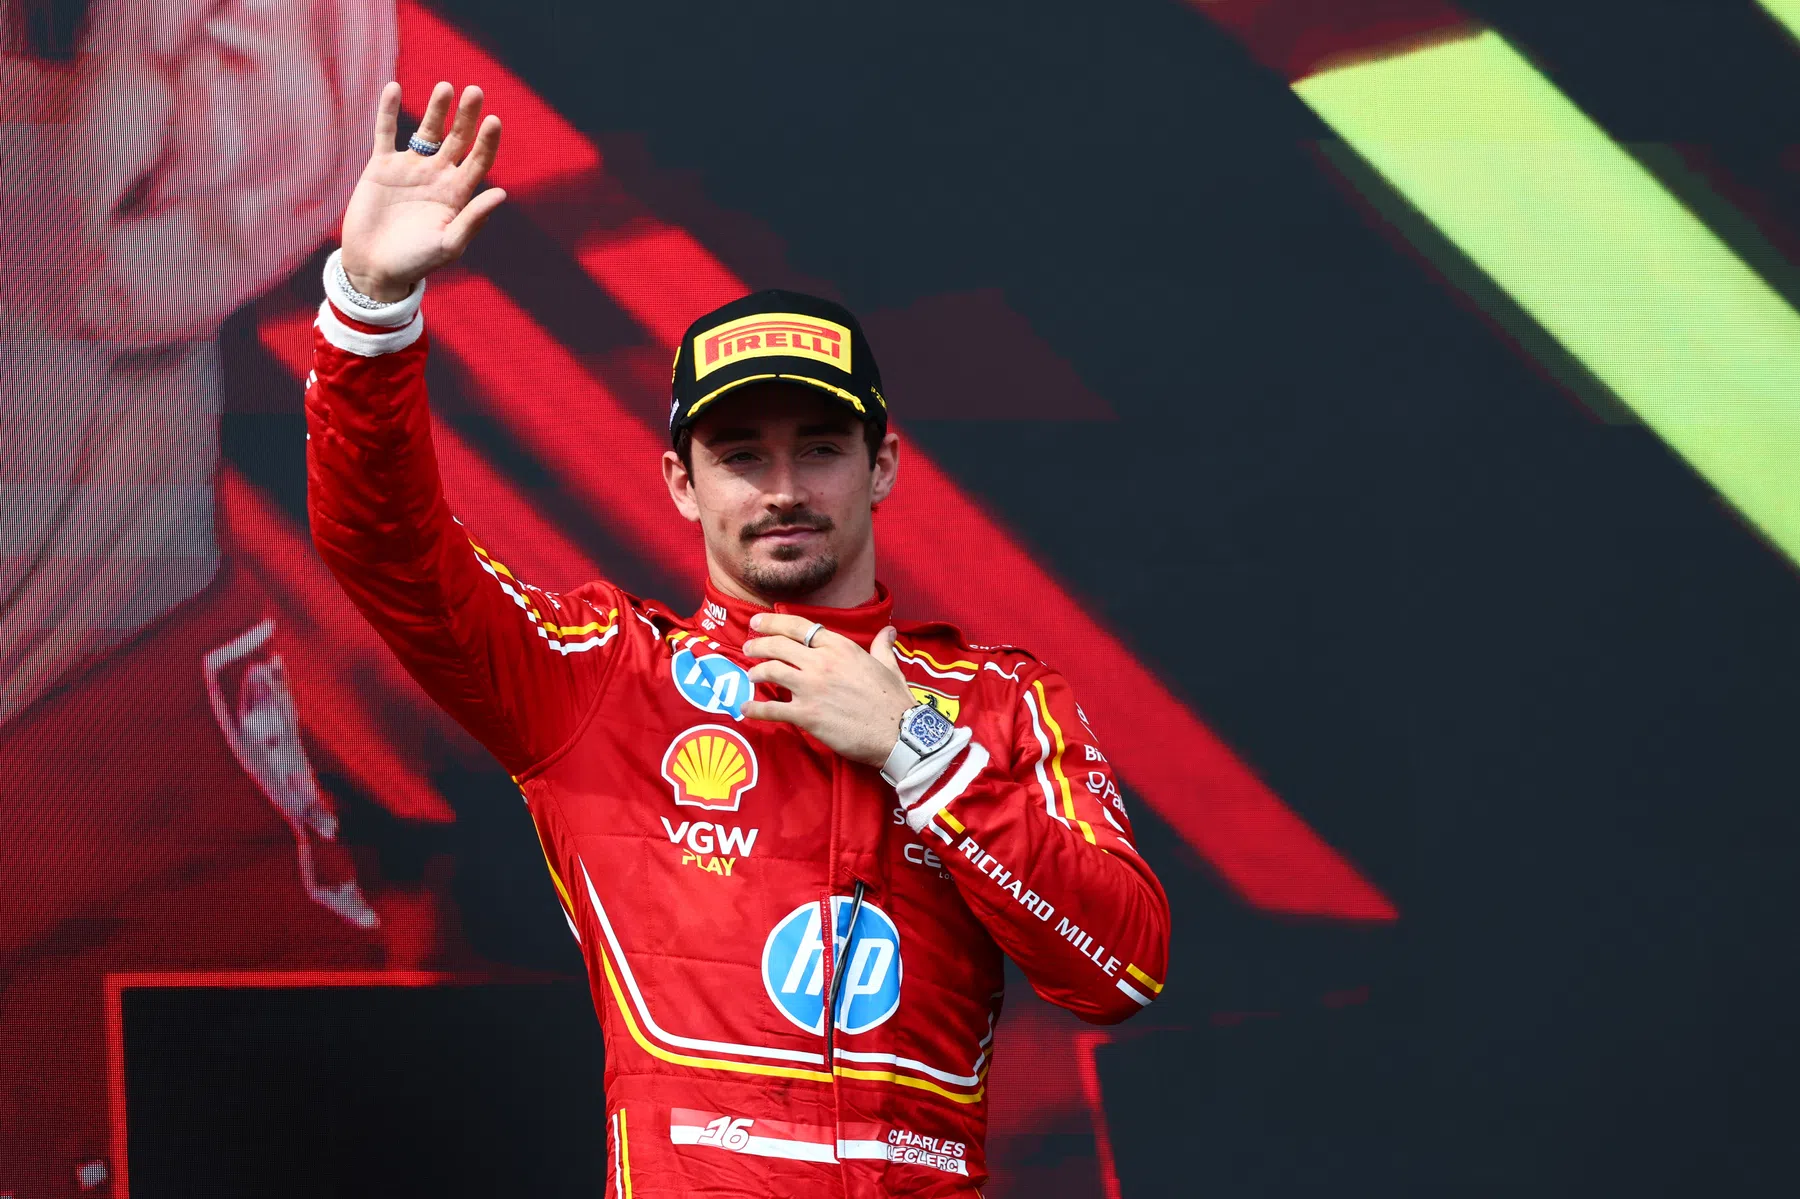 Chalres Leclerc gewinnt ea sports race alex albon wird Dritter